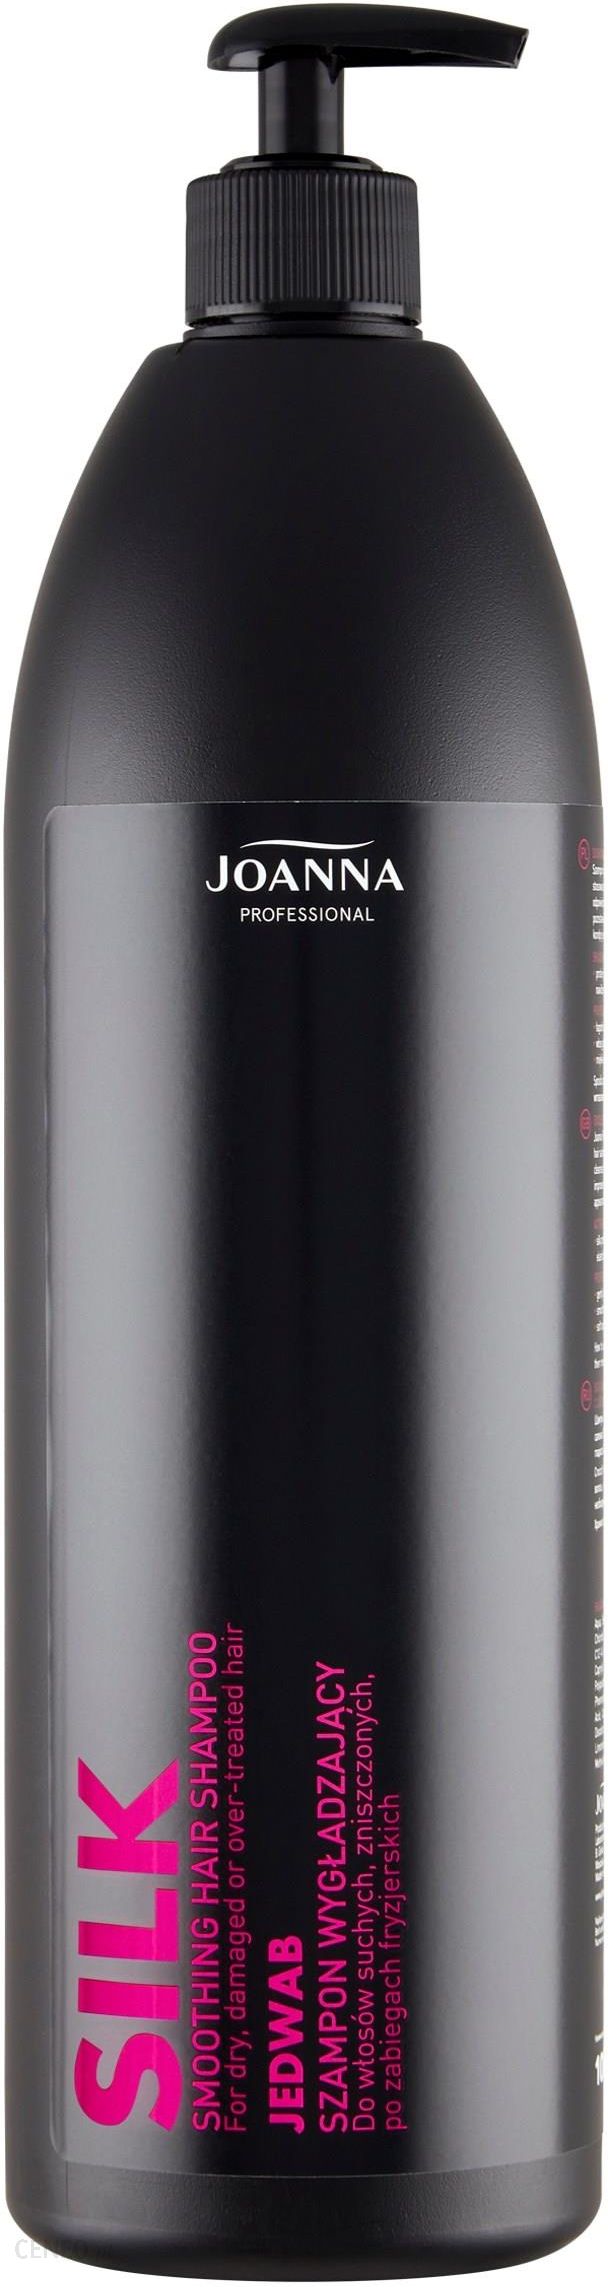 joanna szampon wygładzający z jedwabiem 1000ml wizaz